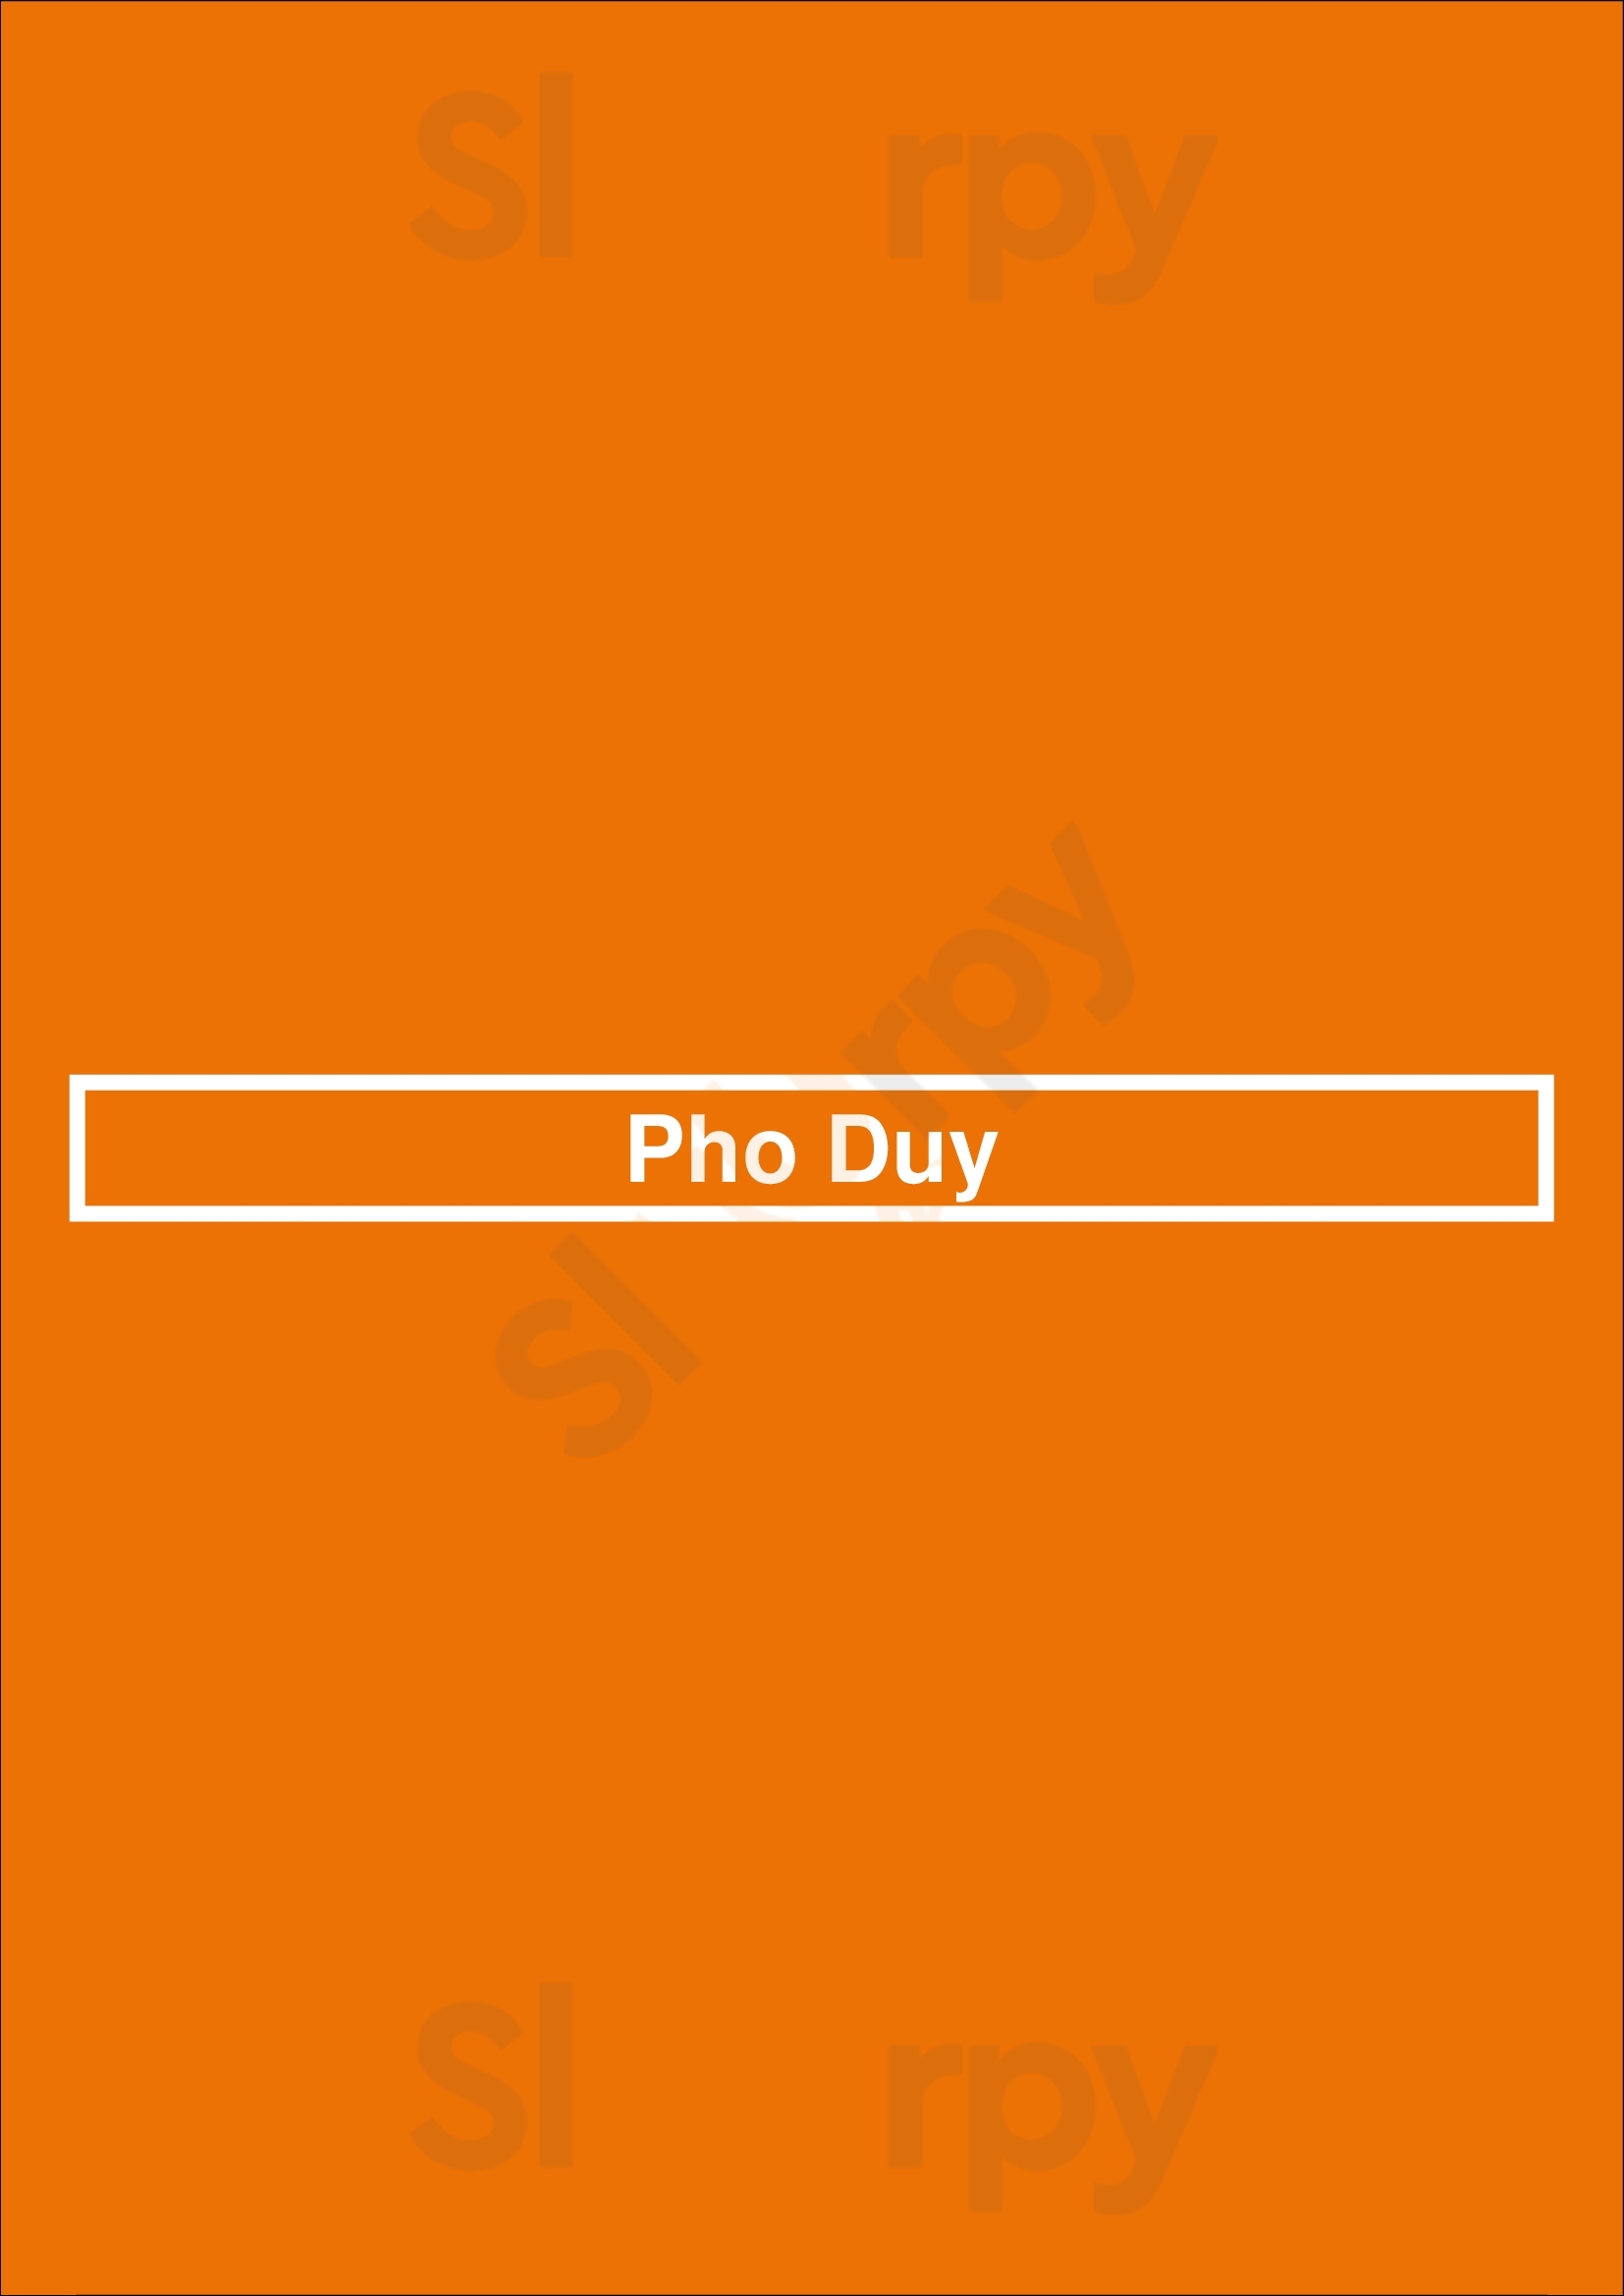 Pho Duy Restaurant Denver Menu - 1